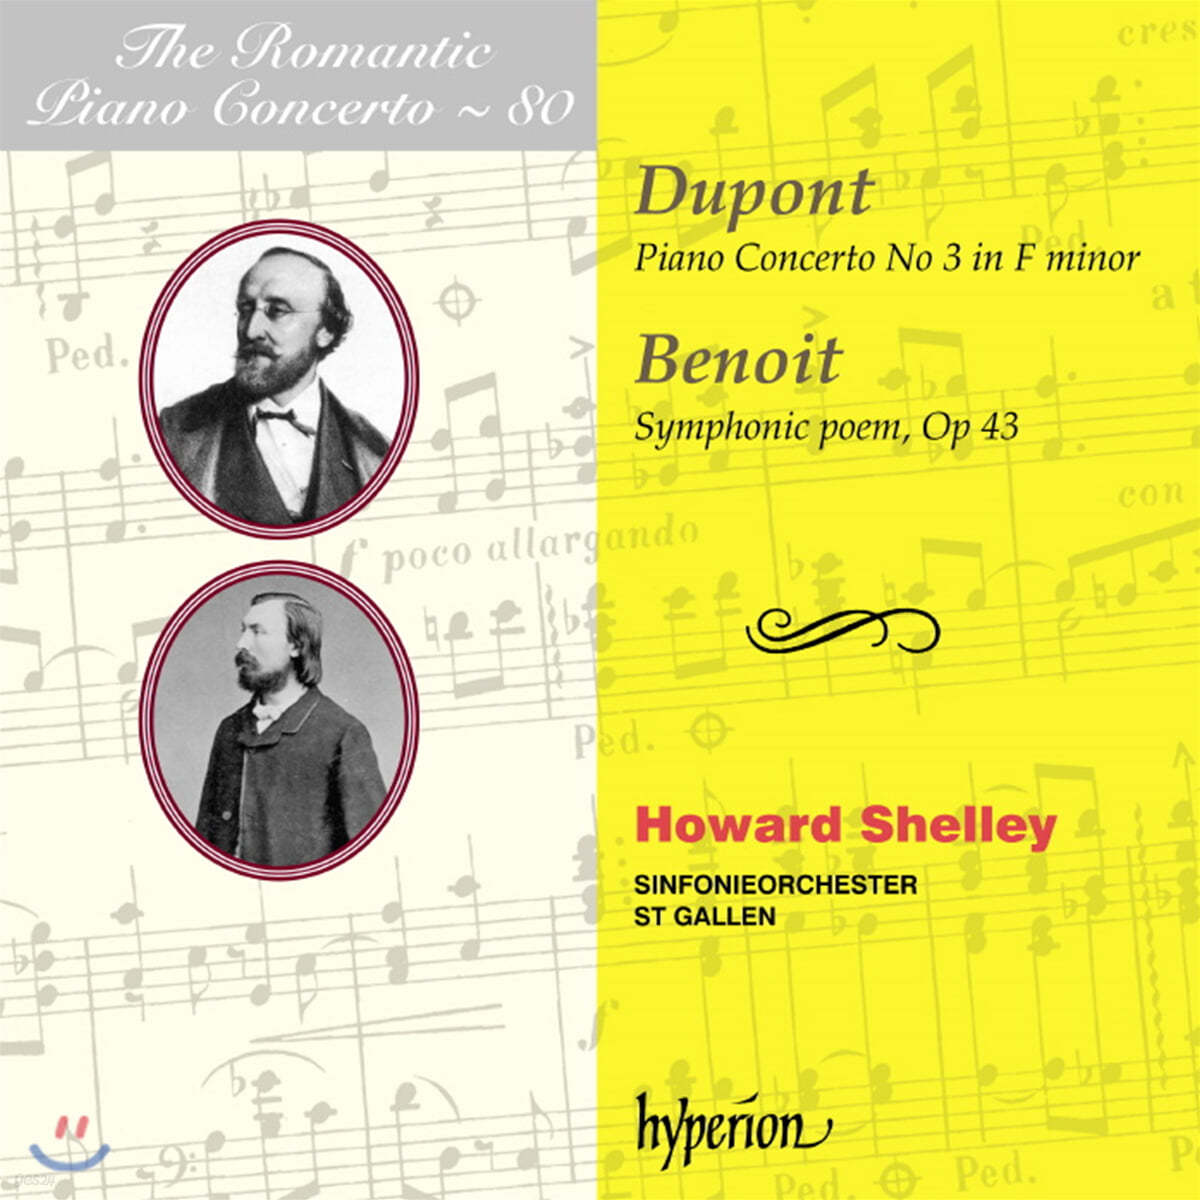 낭만주의 피아노 협주곡 80집 - 오귀스트 듀퐁 / 피터 브누와 (The Romantic Piano Concerto 80 - Auguste Dupont / Peter Benoit) 